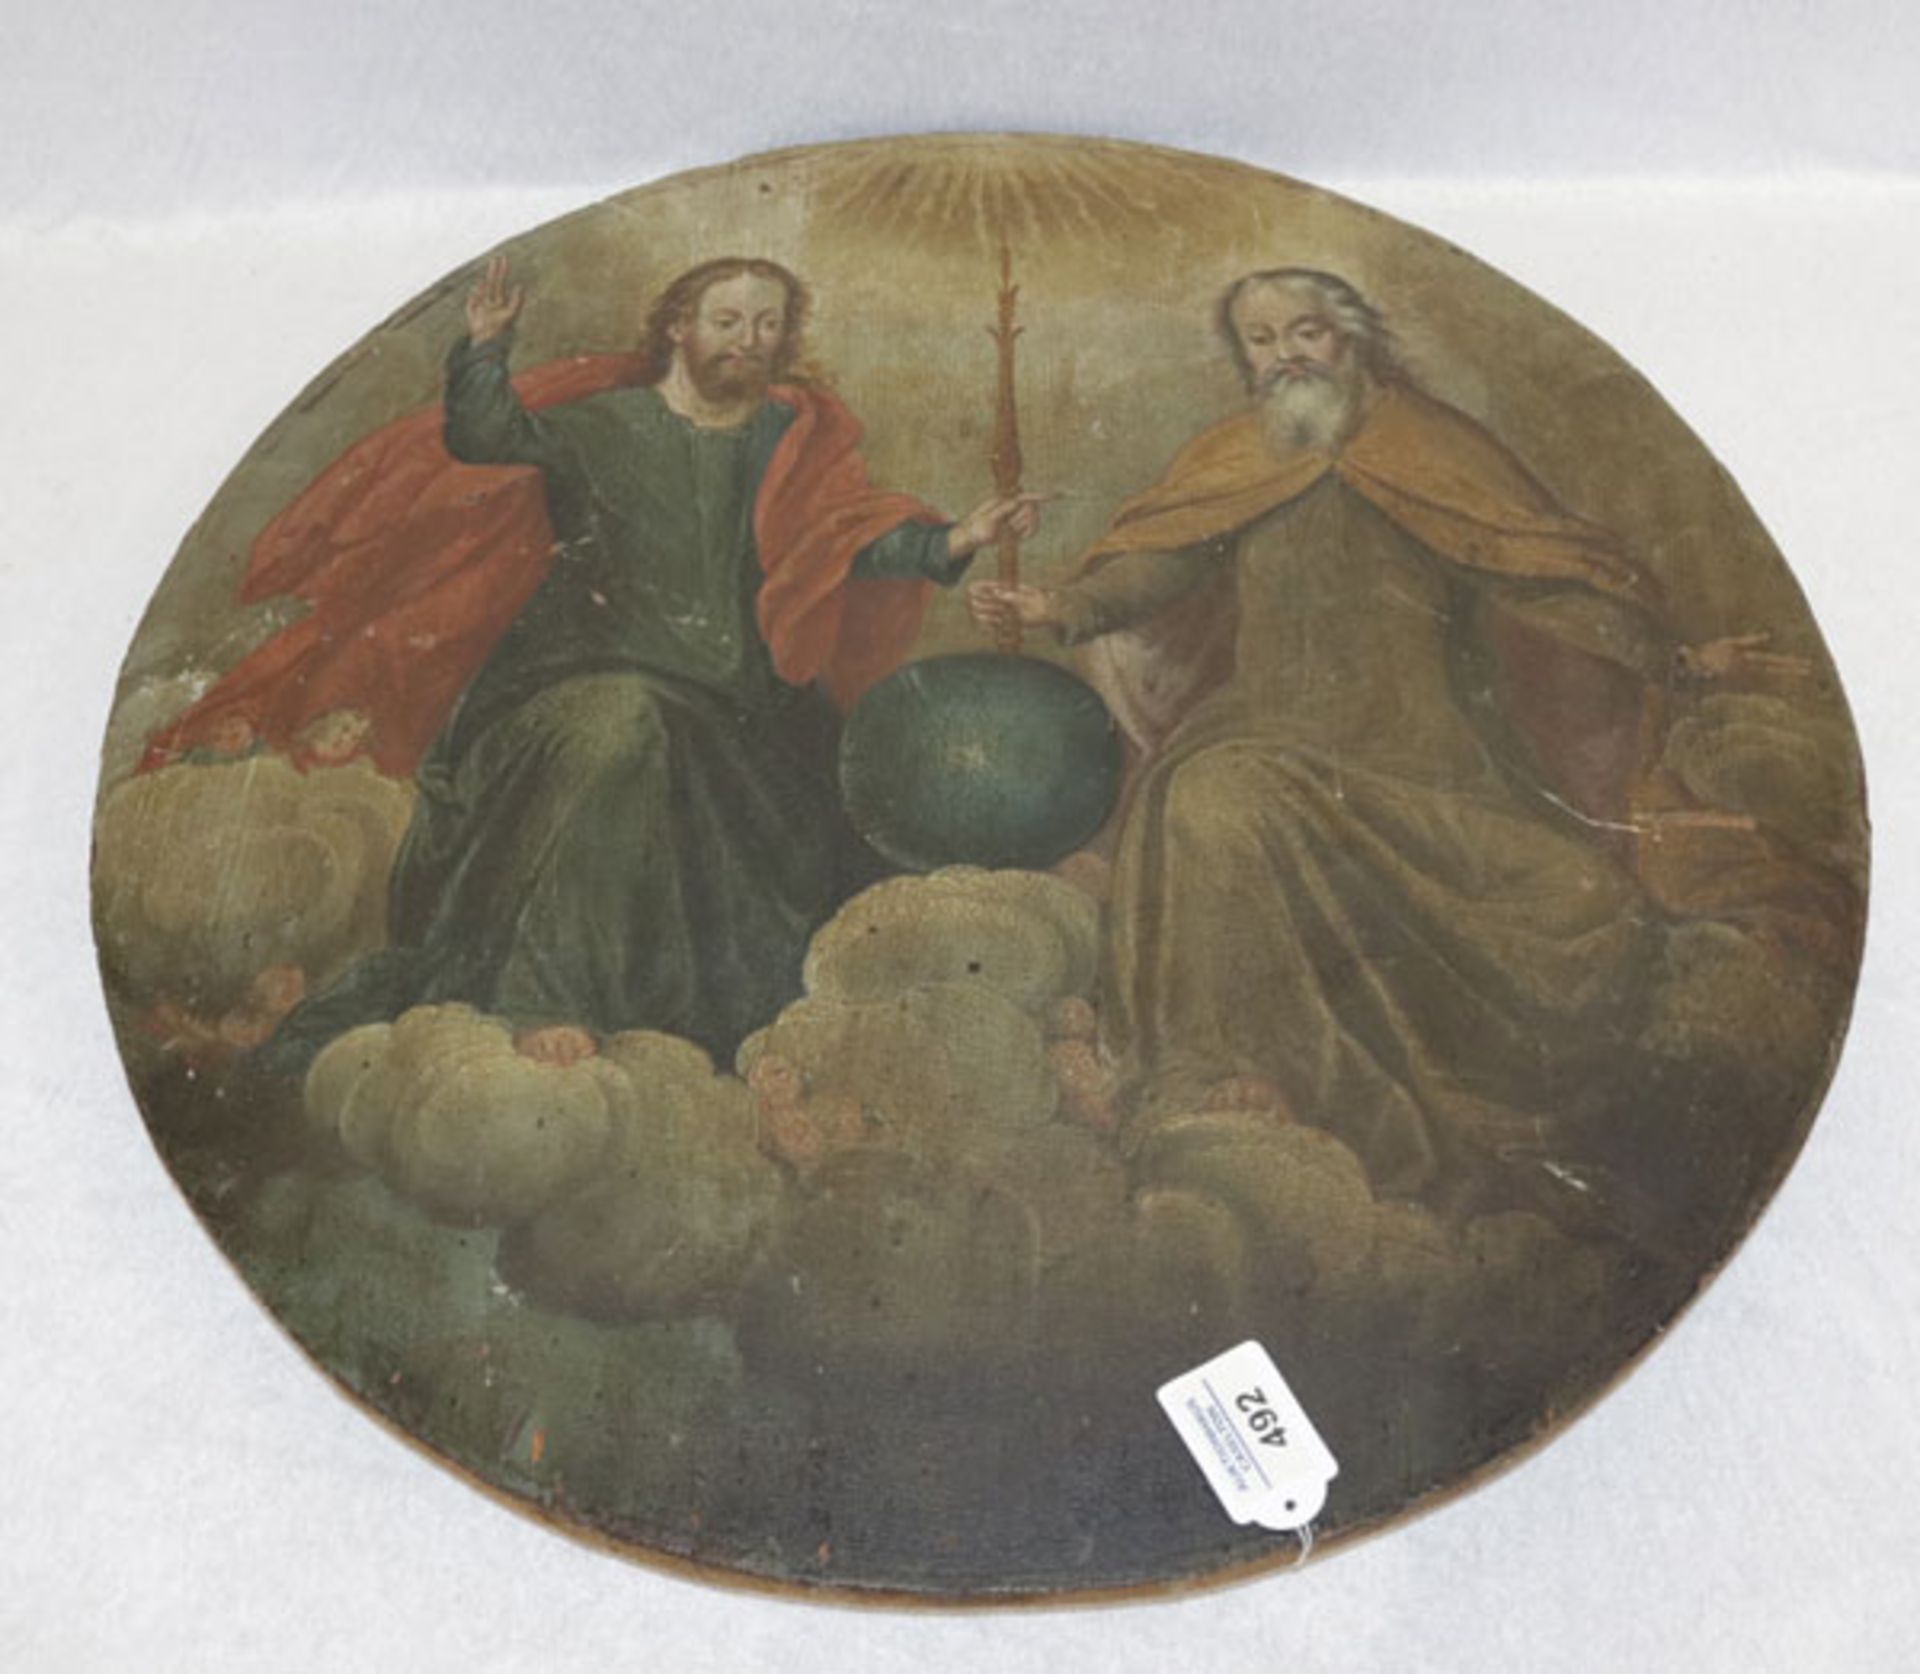 Rundes Holzbild 'Dreifaltigkeit', Bildoberfläche beschädigt, D 59 cm, Altersspuren